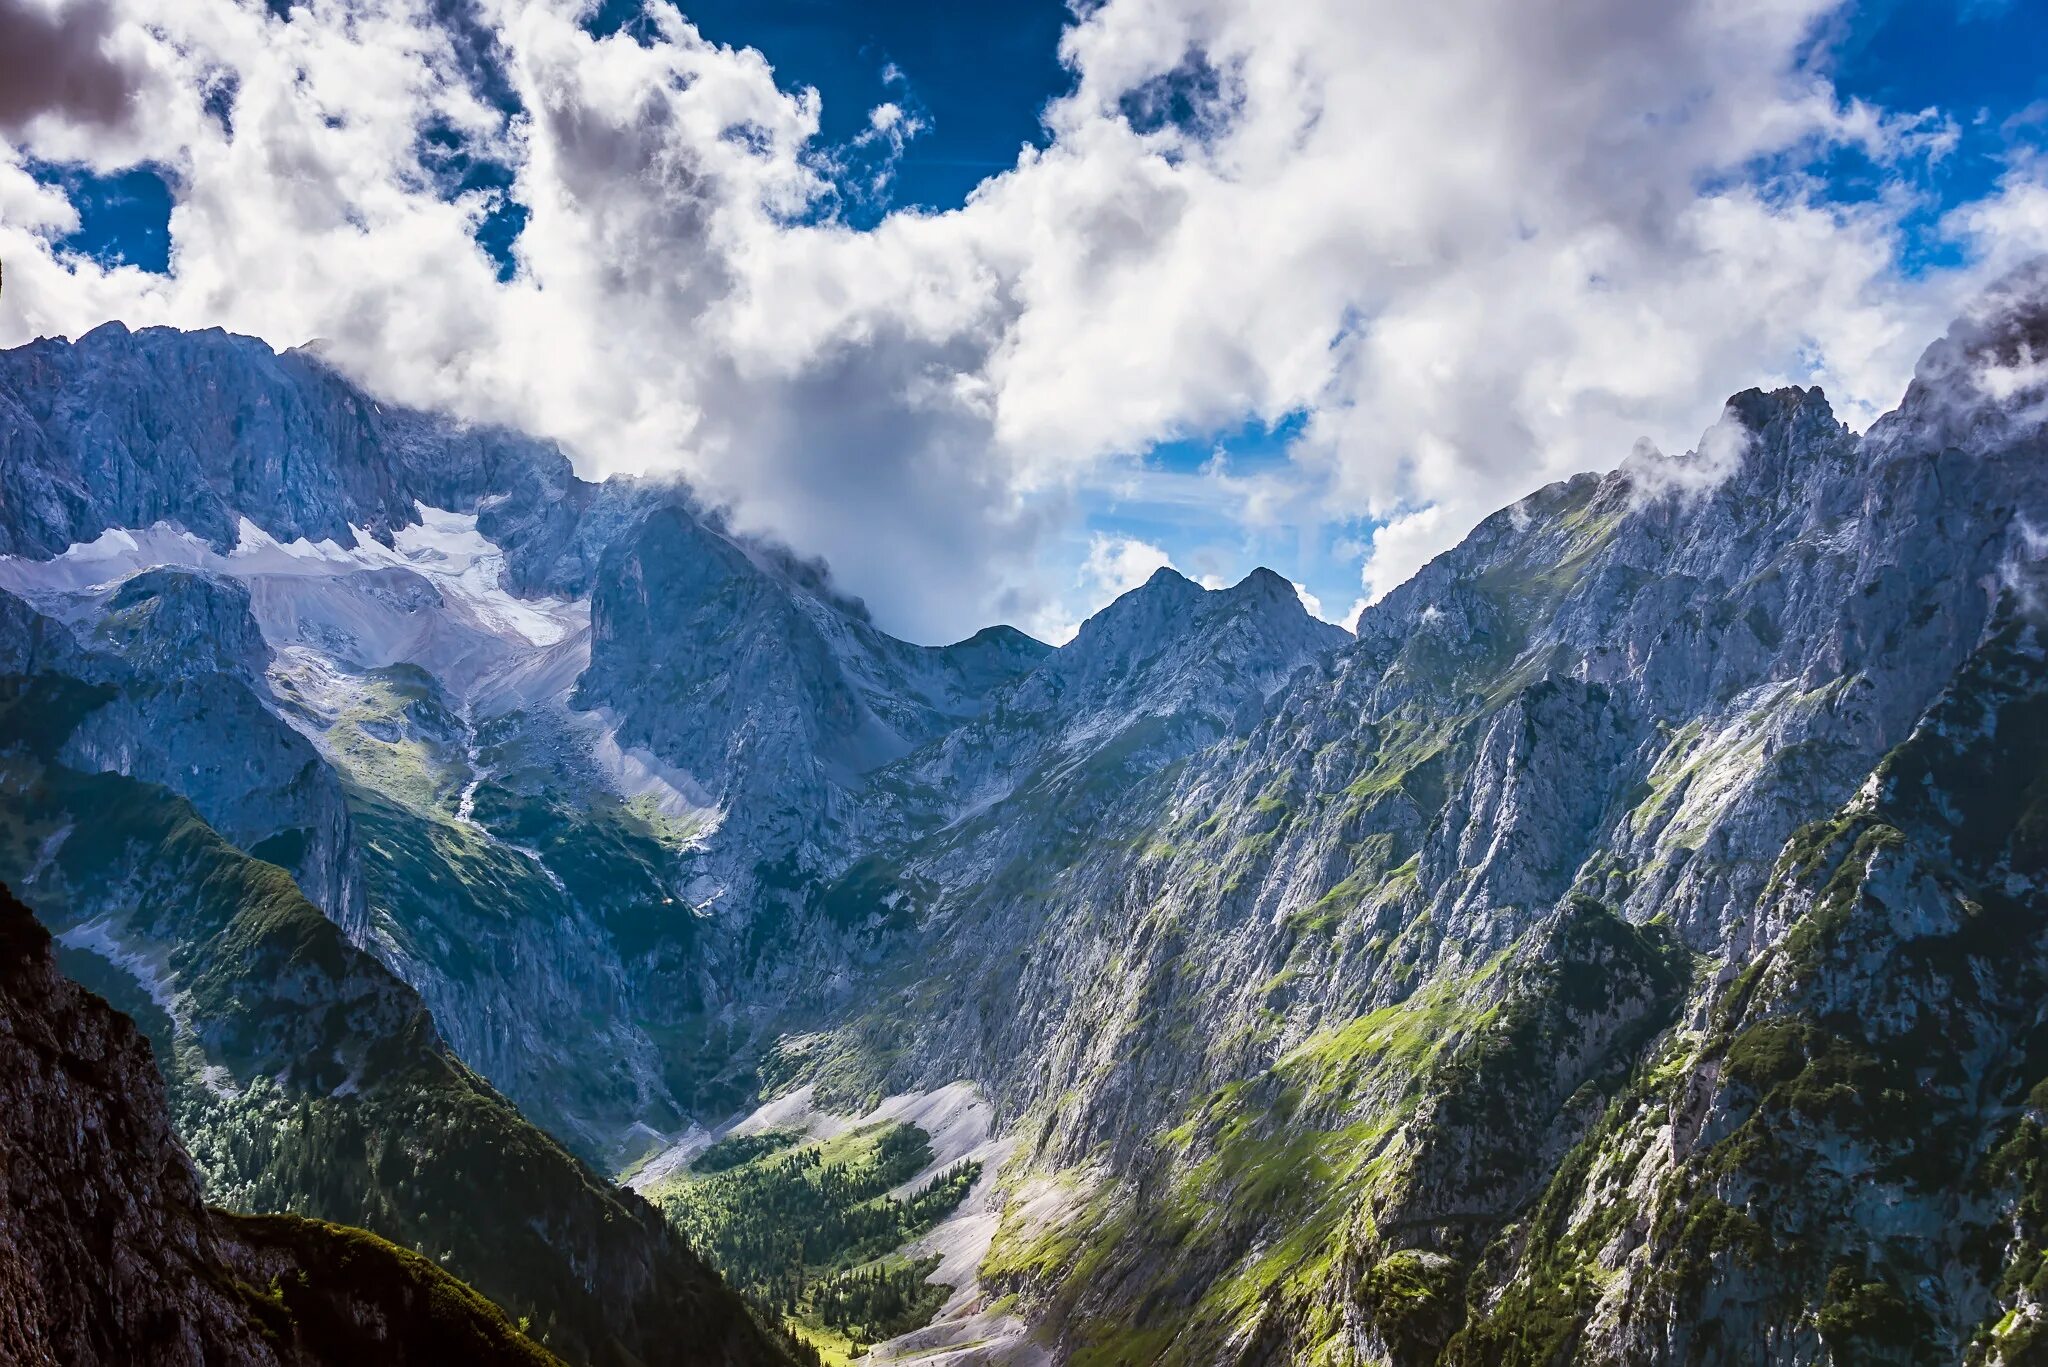 Пик Цугшпитце. Гора Zugspitze. Гора Цугшпитце в Германии. — Гора Цугшпитце (2962 м)..